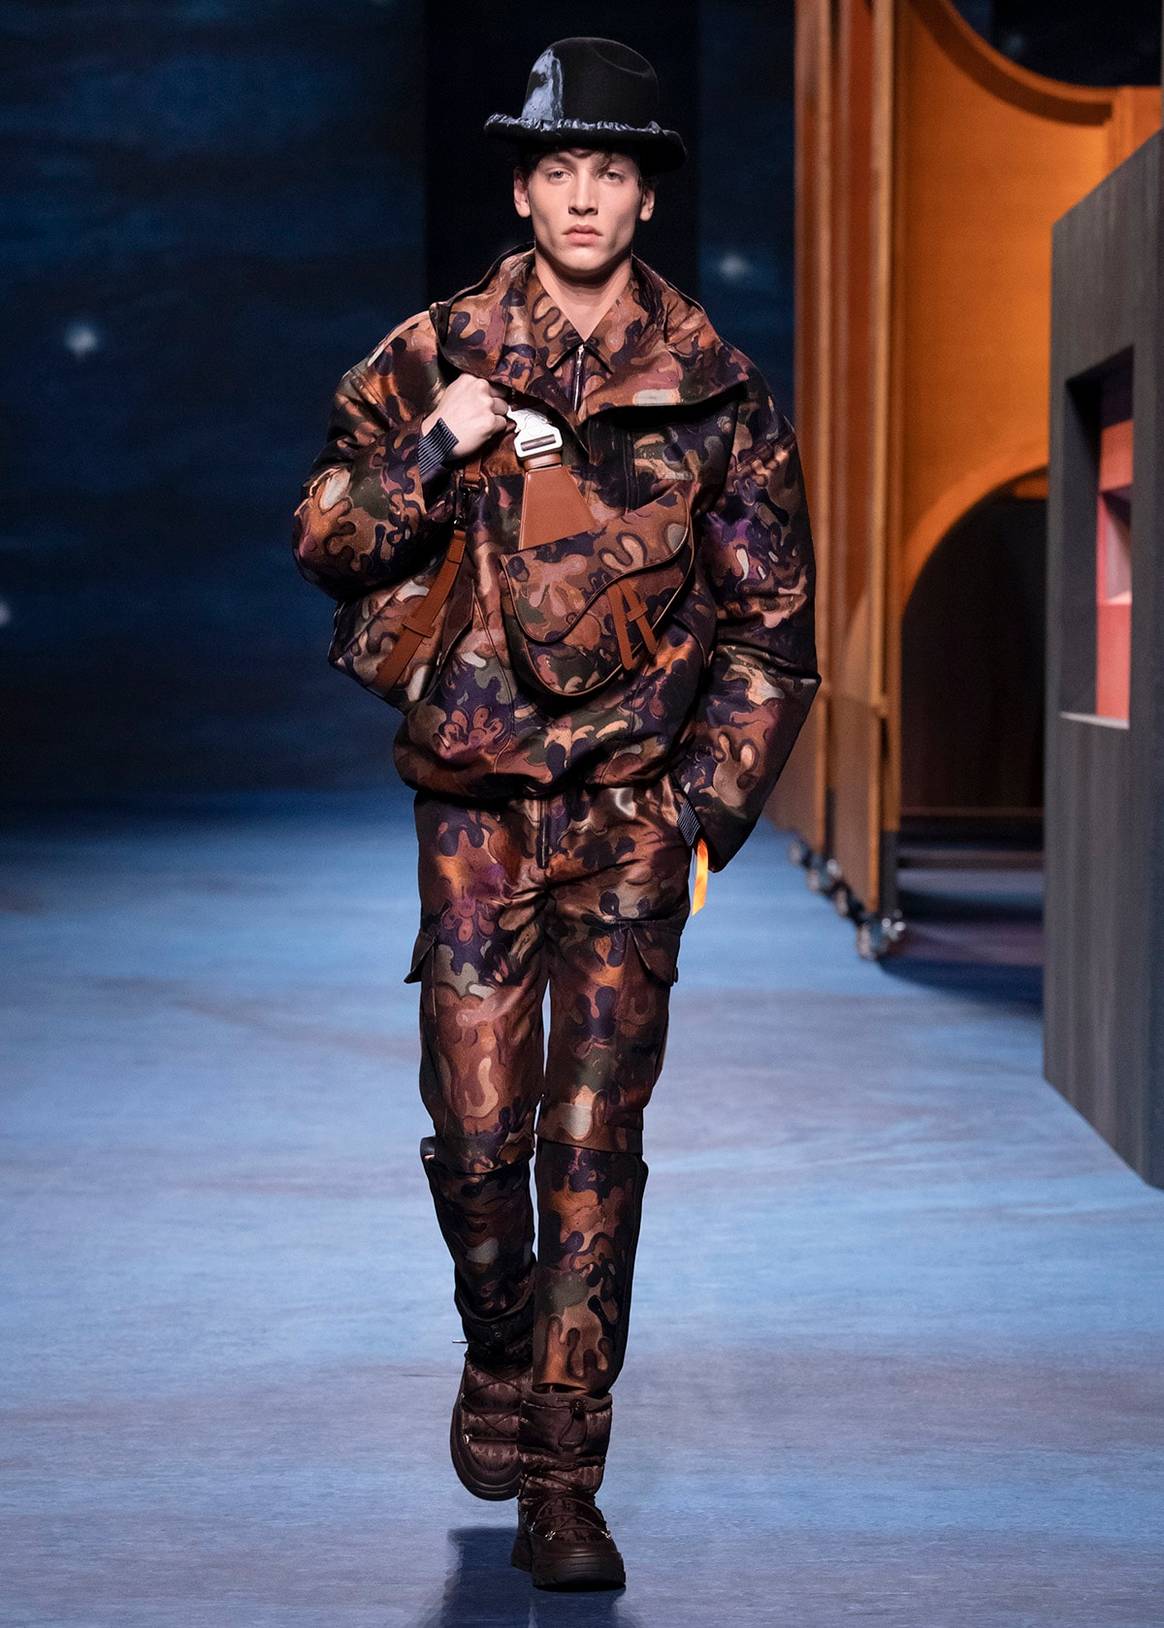 Dior reivindica los valores de una Alta Costura masculina con una colección junto al artista Peter Doig